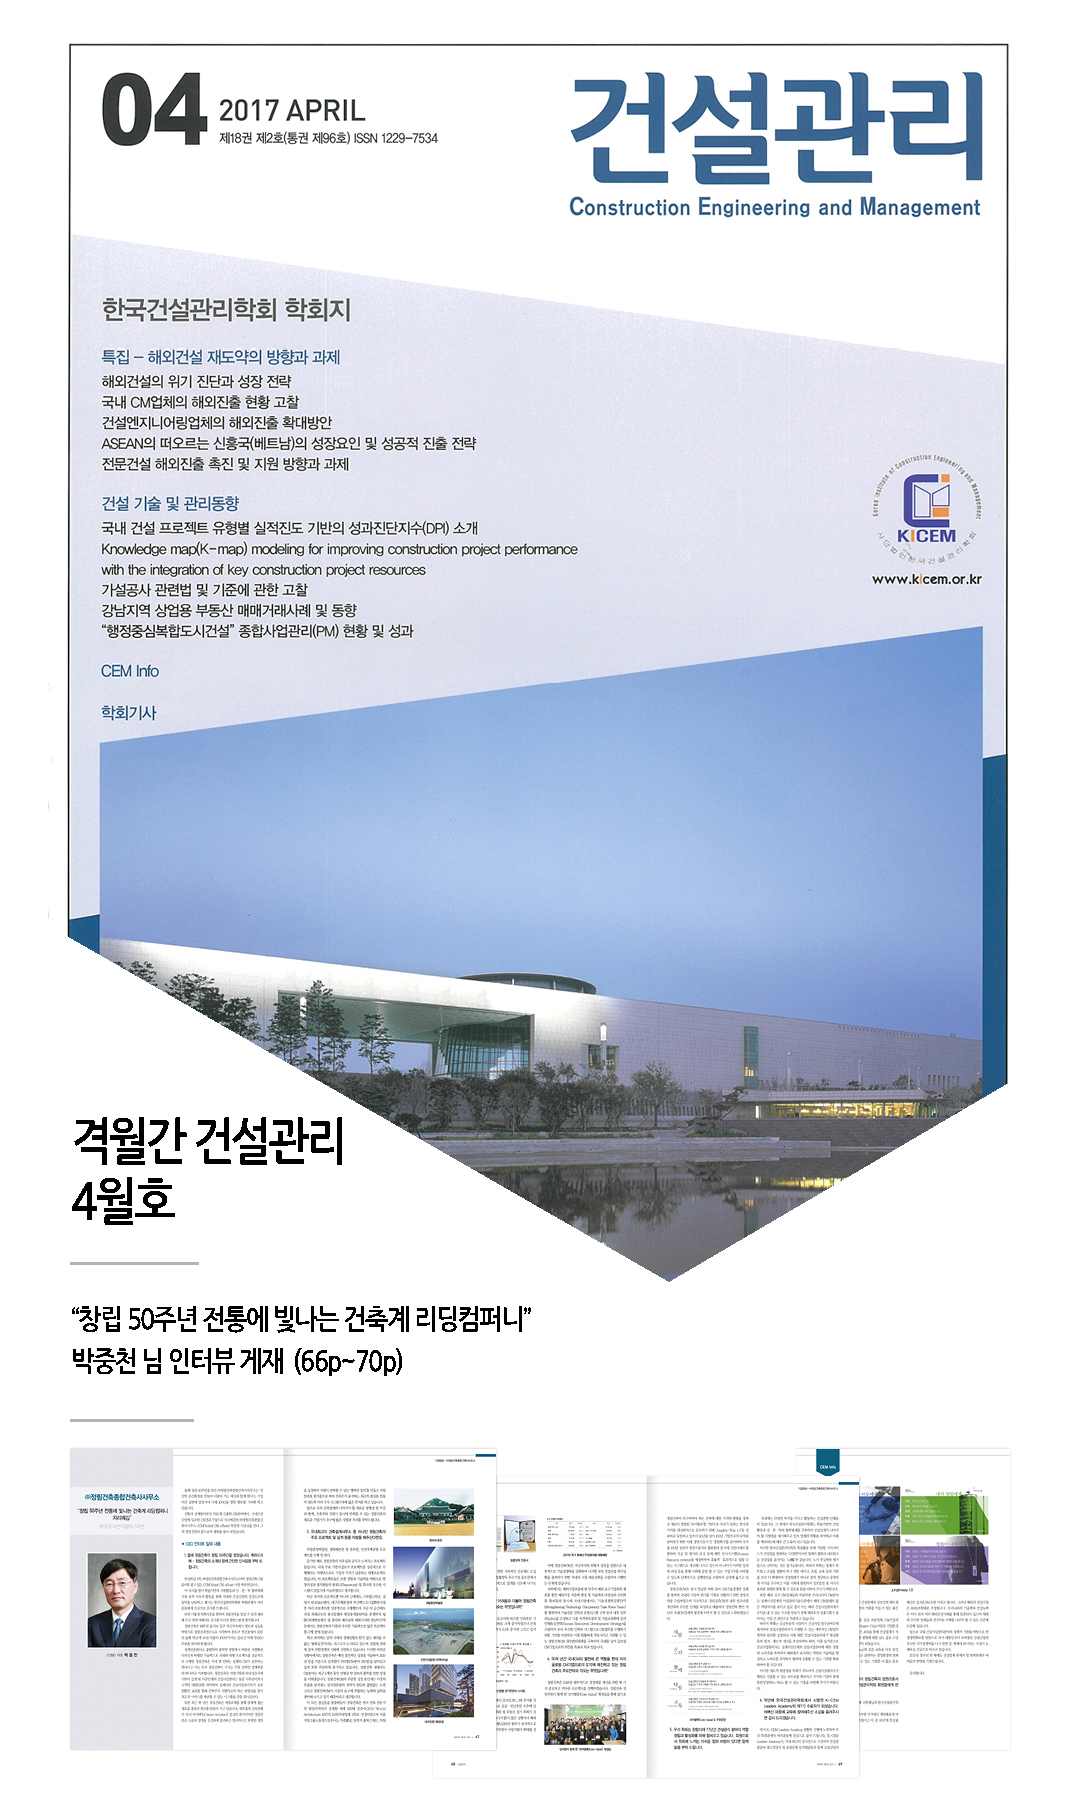 격월간 건설관리, 박중천 님 인터뷰 게재 1